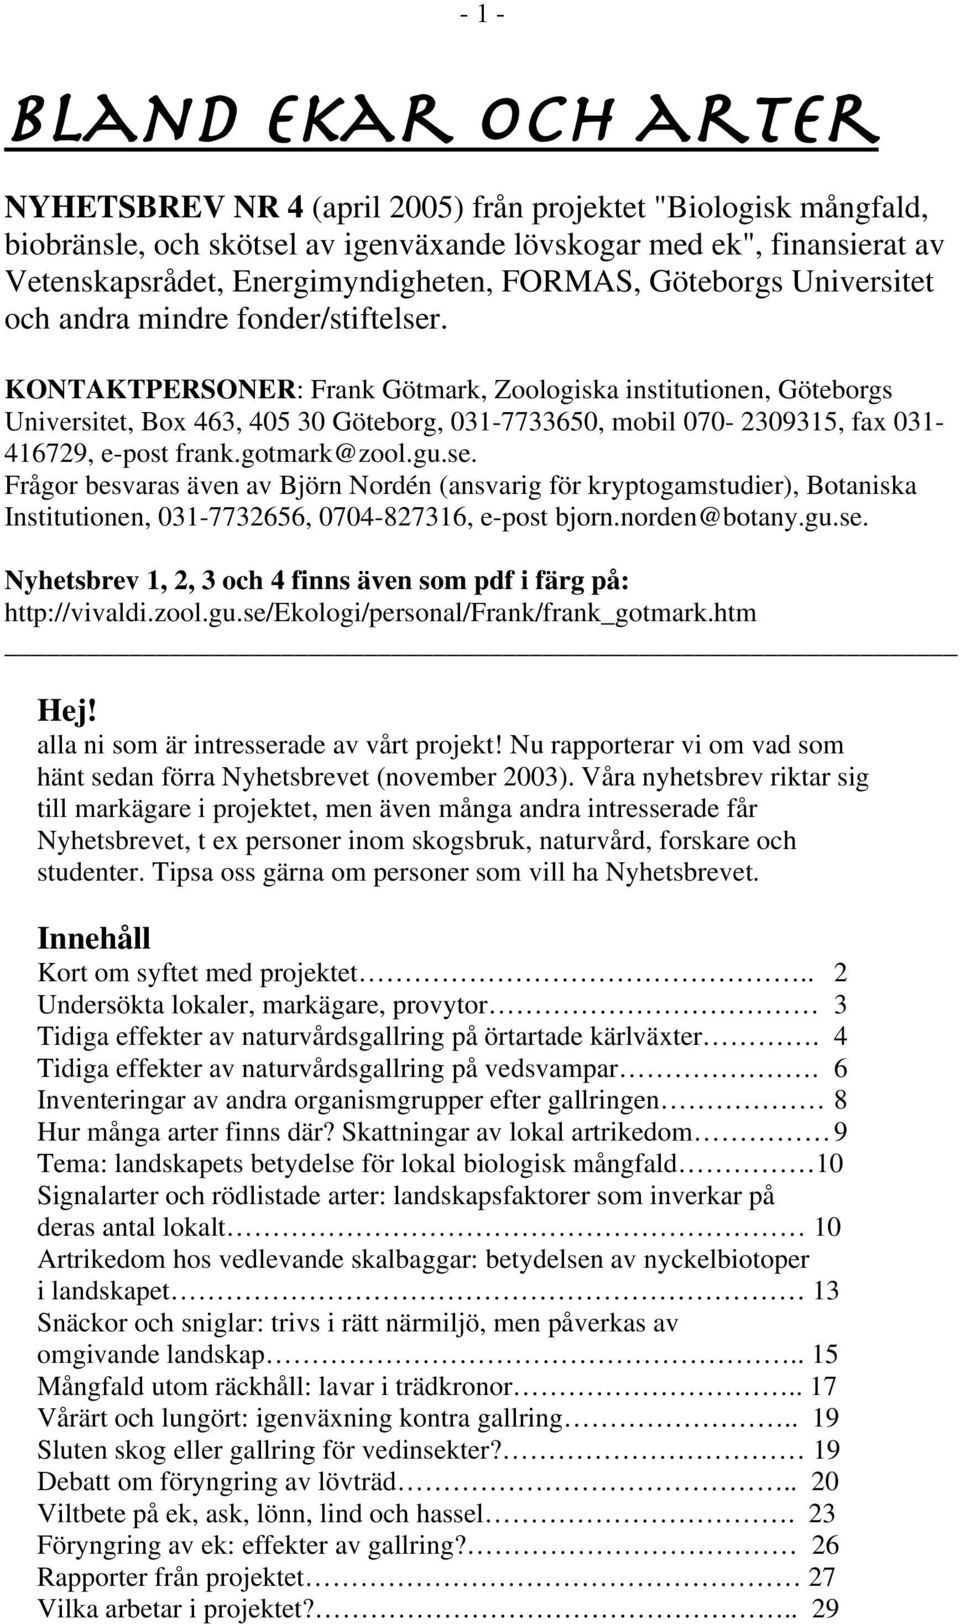 KONTAKTPERSONER: Frank Götmark, Zoologiska institutionen, Göteborgs Universitet, Box 463, 405 30 Göteborg, 031-7733650, mobil 070-2309315, fax 031-416729, e-post frank.gotmark@zool.gu.se.